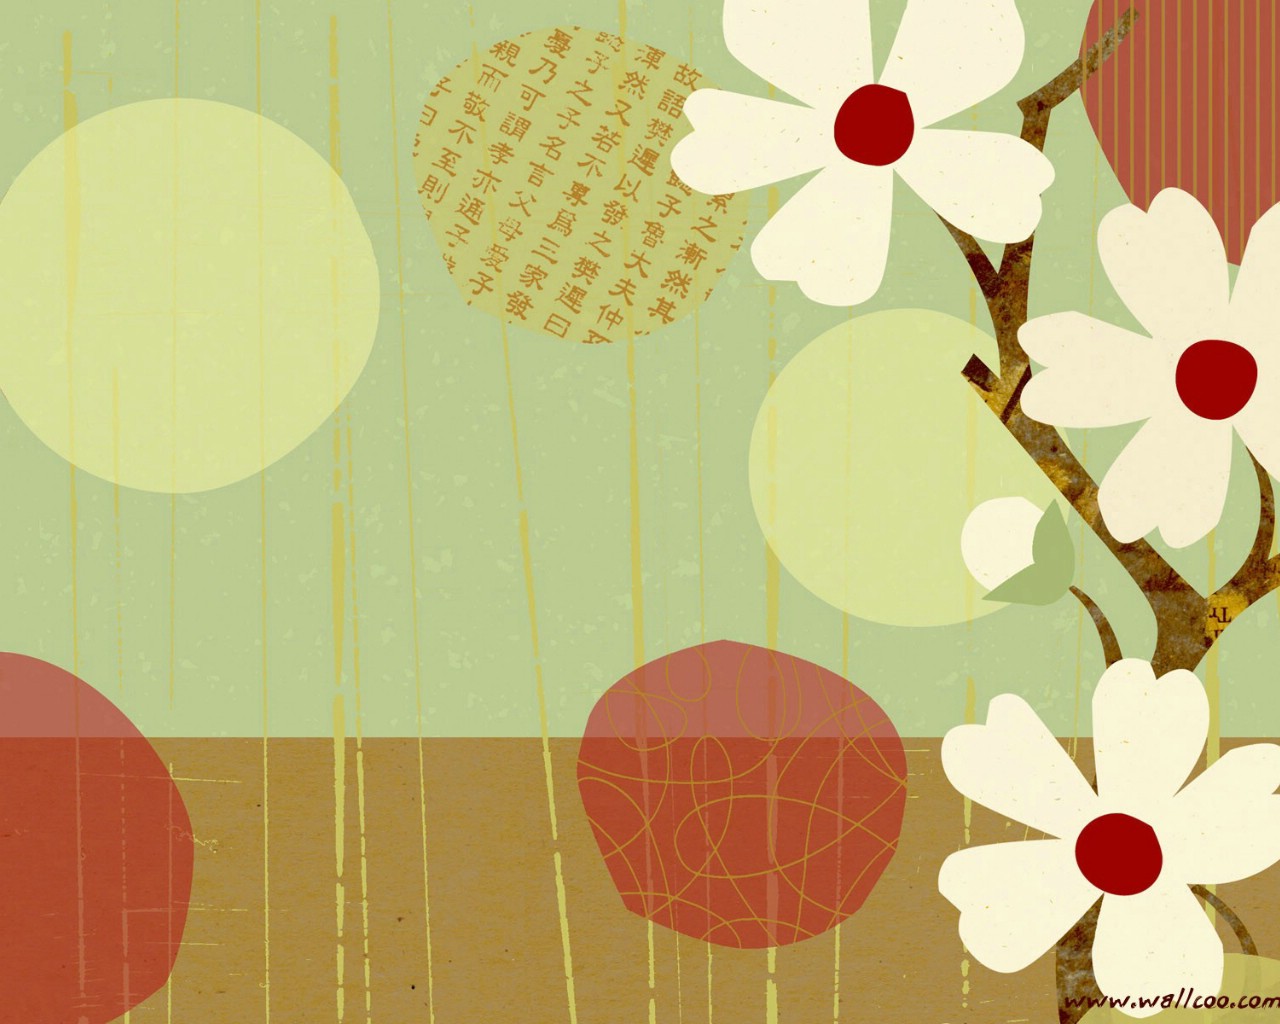 壁纸1280x1024 花卉图案设计 日本樱花插画壁纸壁纸 艺术与抽象花卉壁纸壁纸 艺术与抽象花卉壁纸图片 艺术与抽象花卉壁纸素材 花卉壁纸 花卉图库 花卉图片素材桌面壁纸